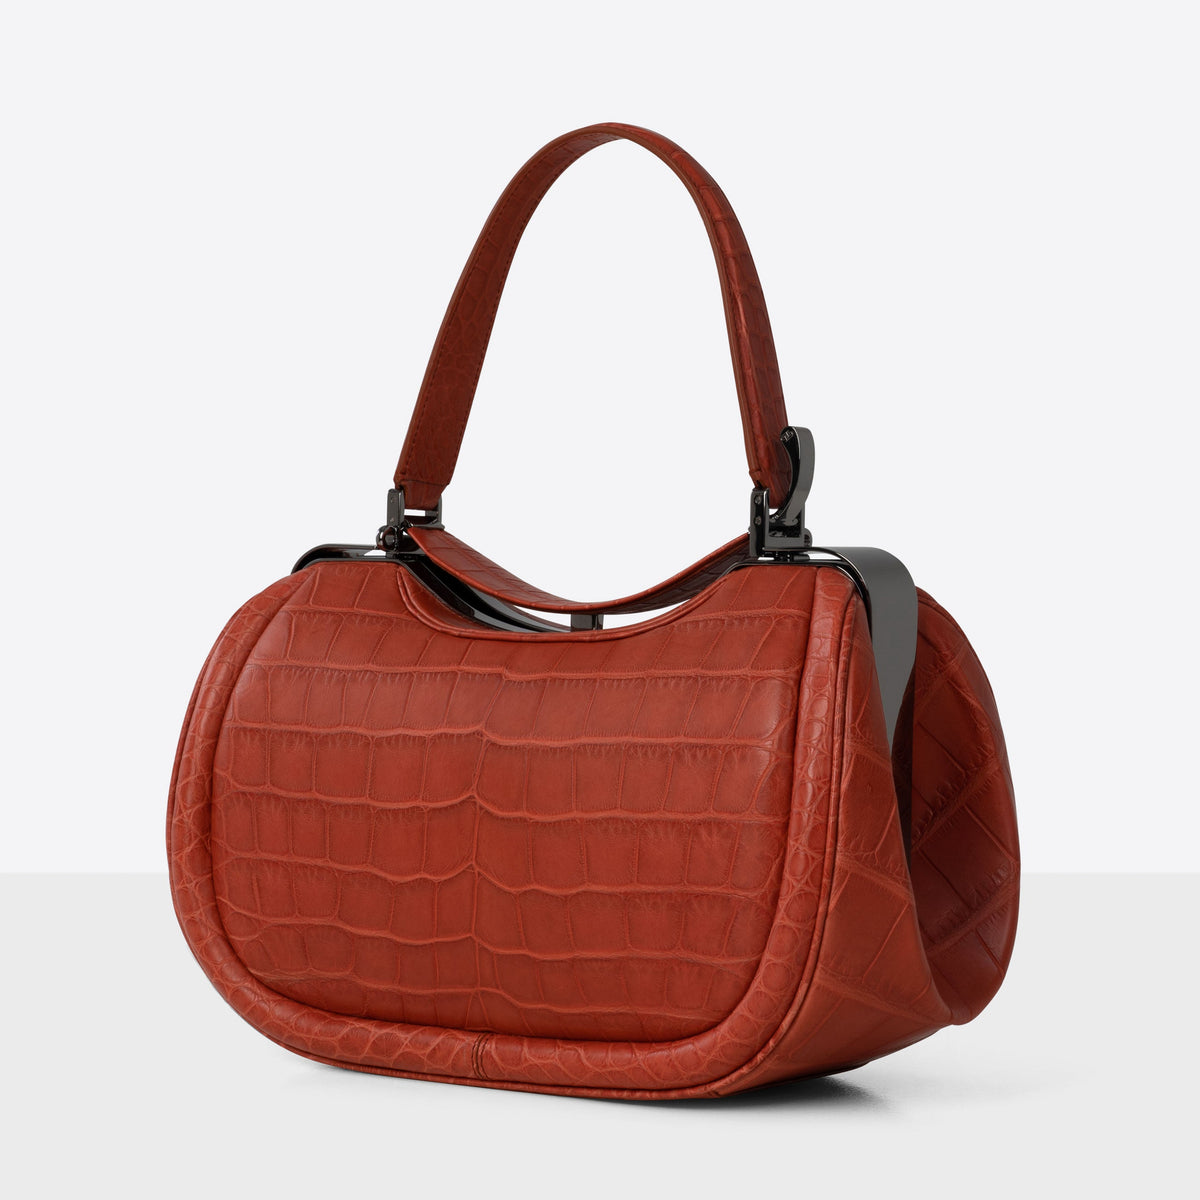 DOTTI Aura handbag in red brick Alligator. Made in Italy